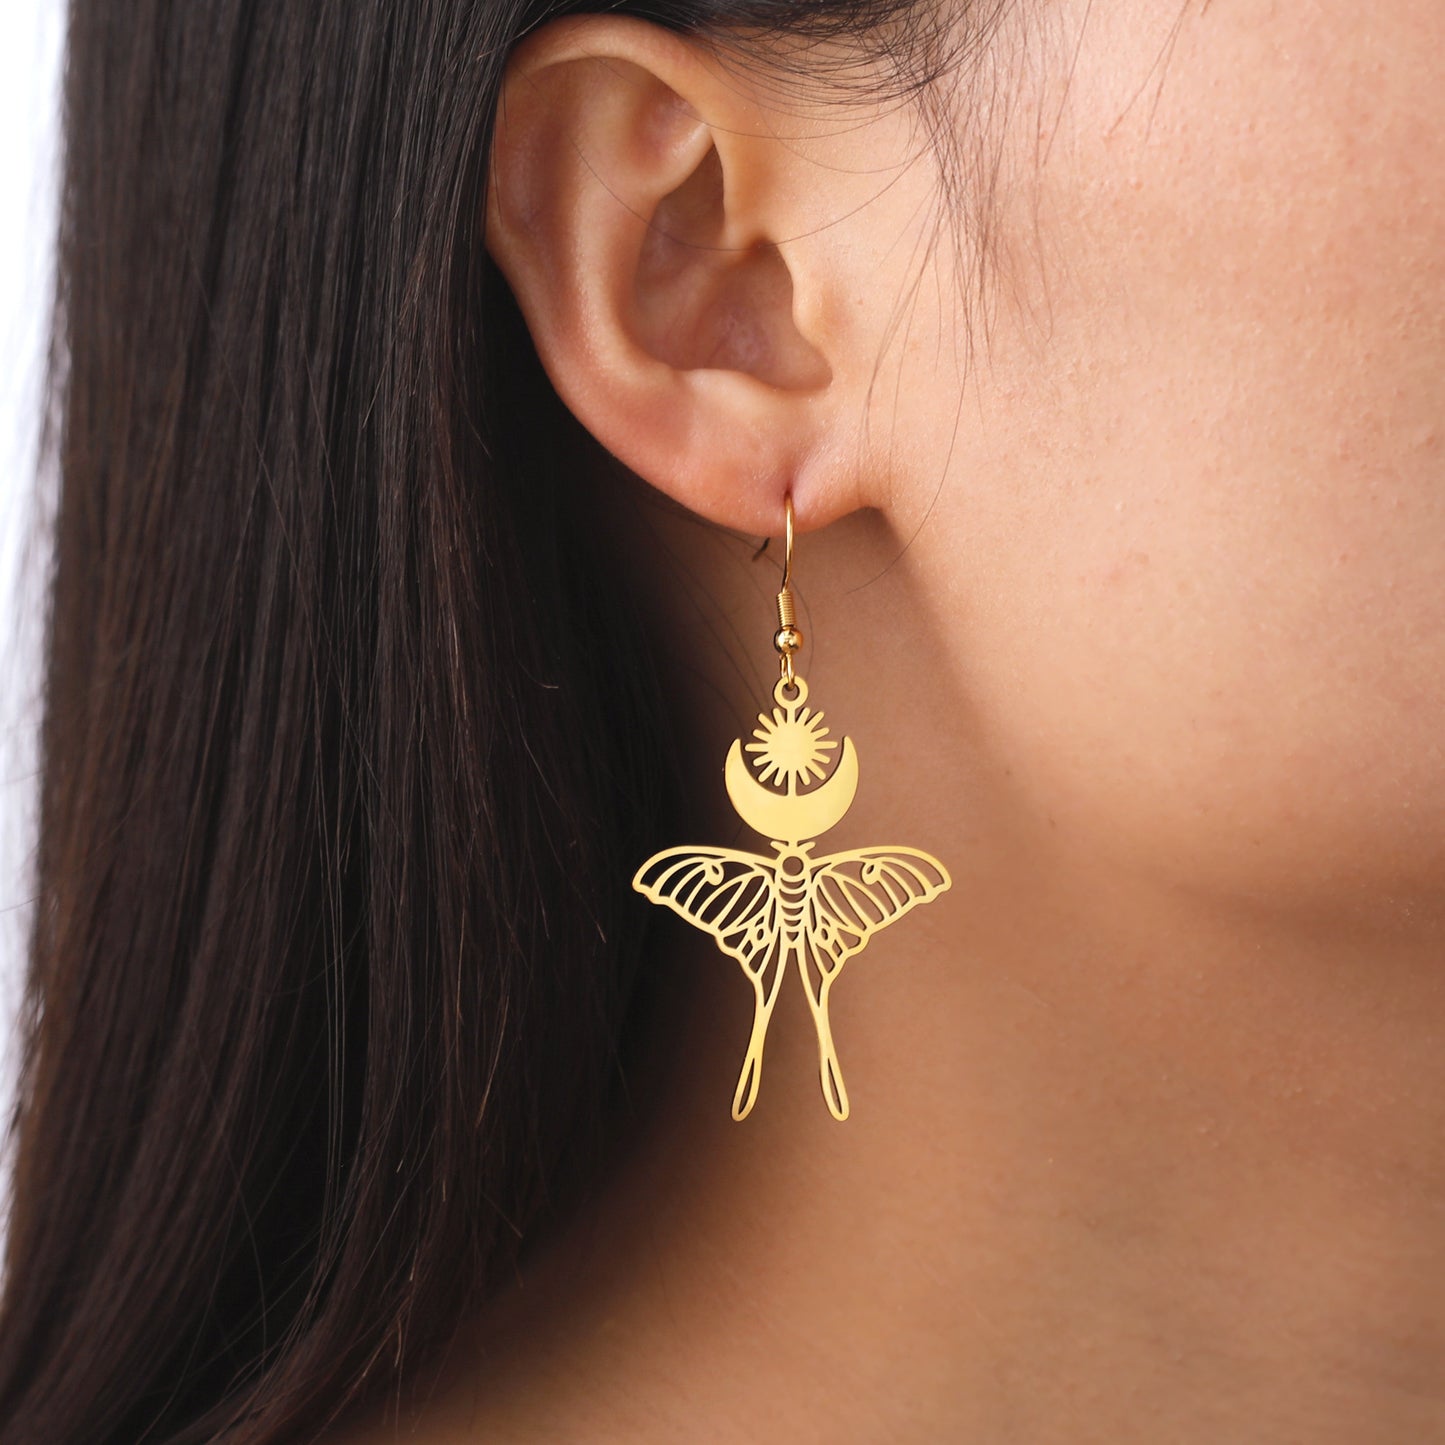 Butterfly Look Earrings for woman